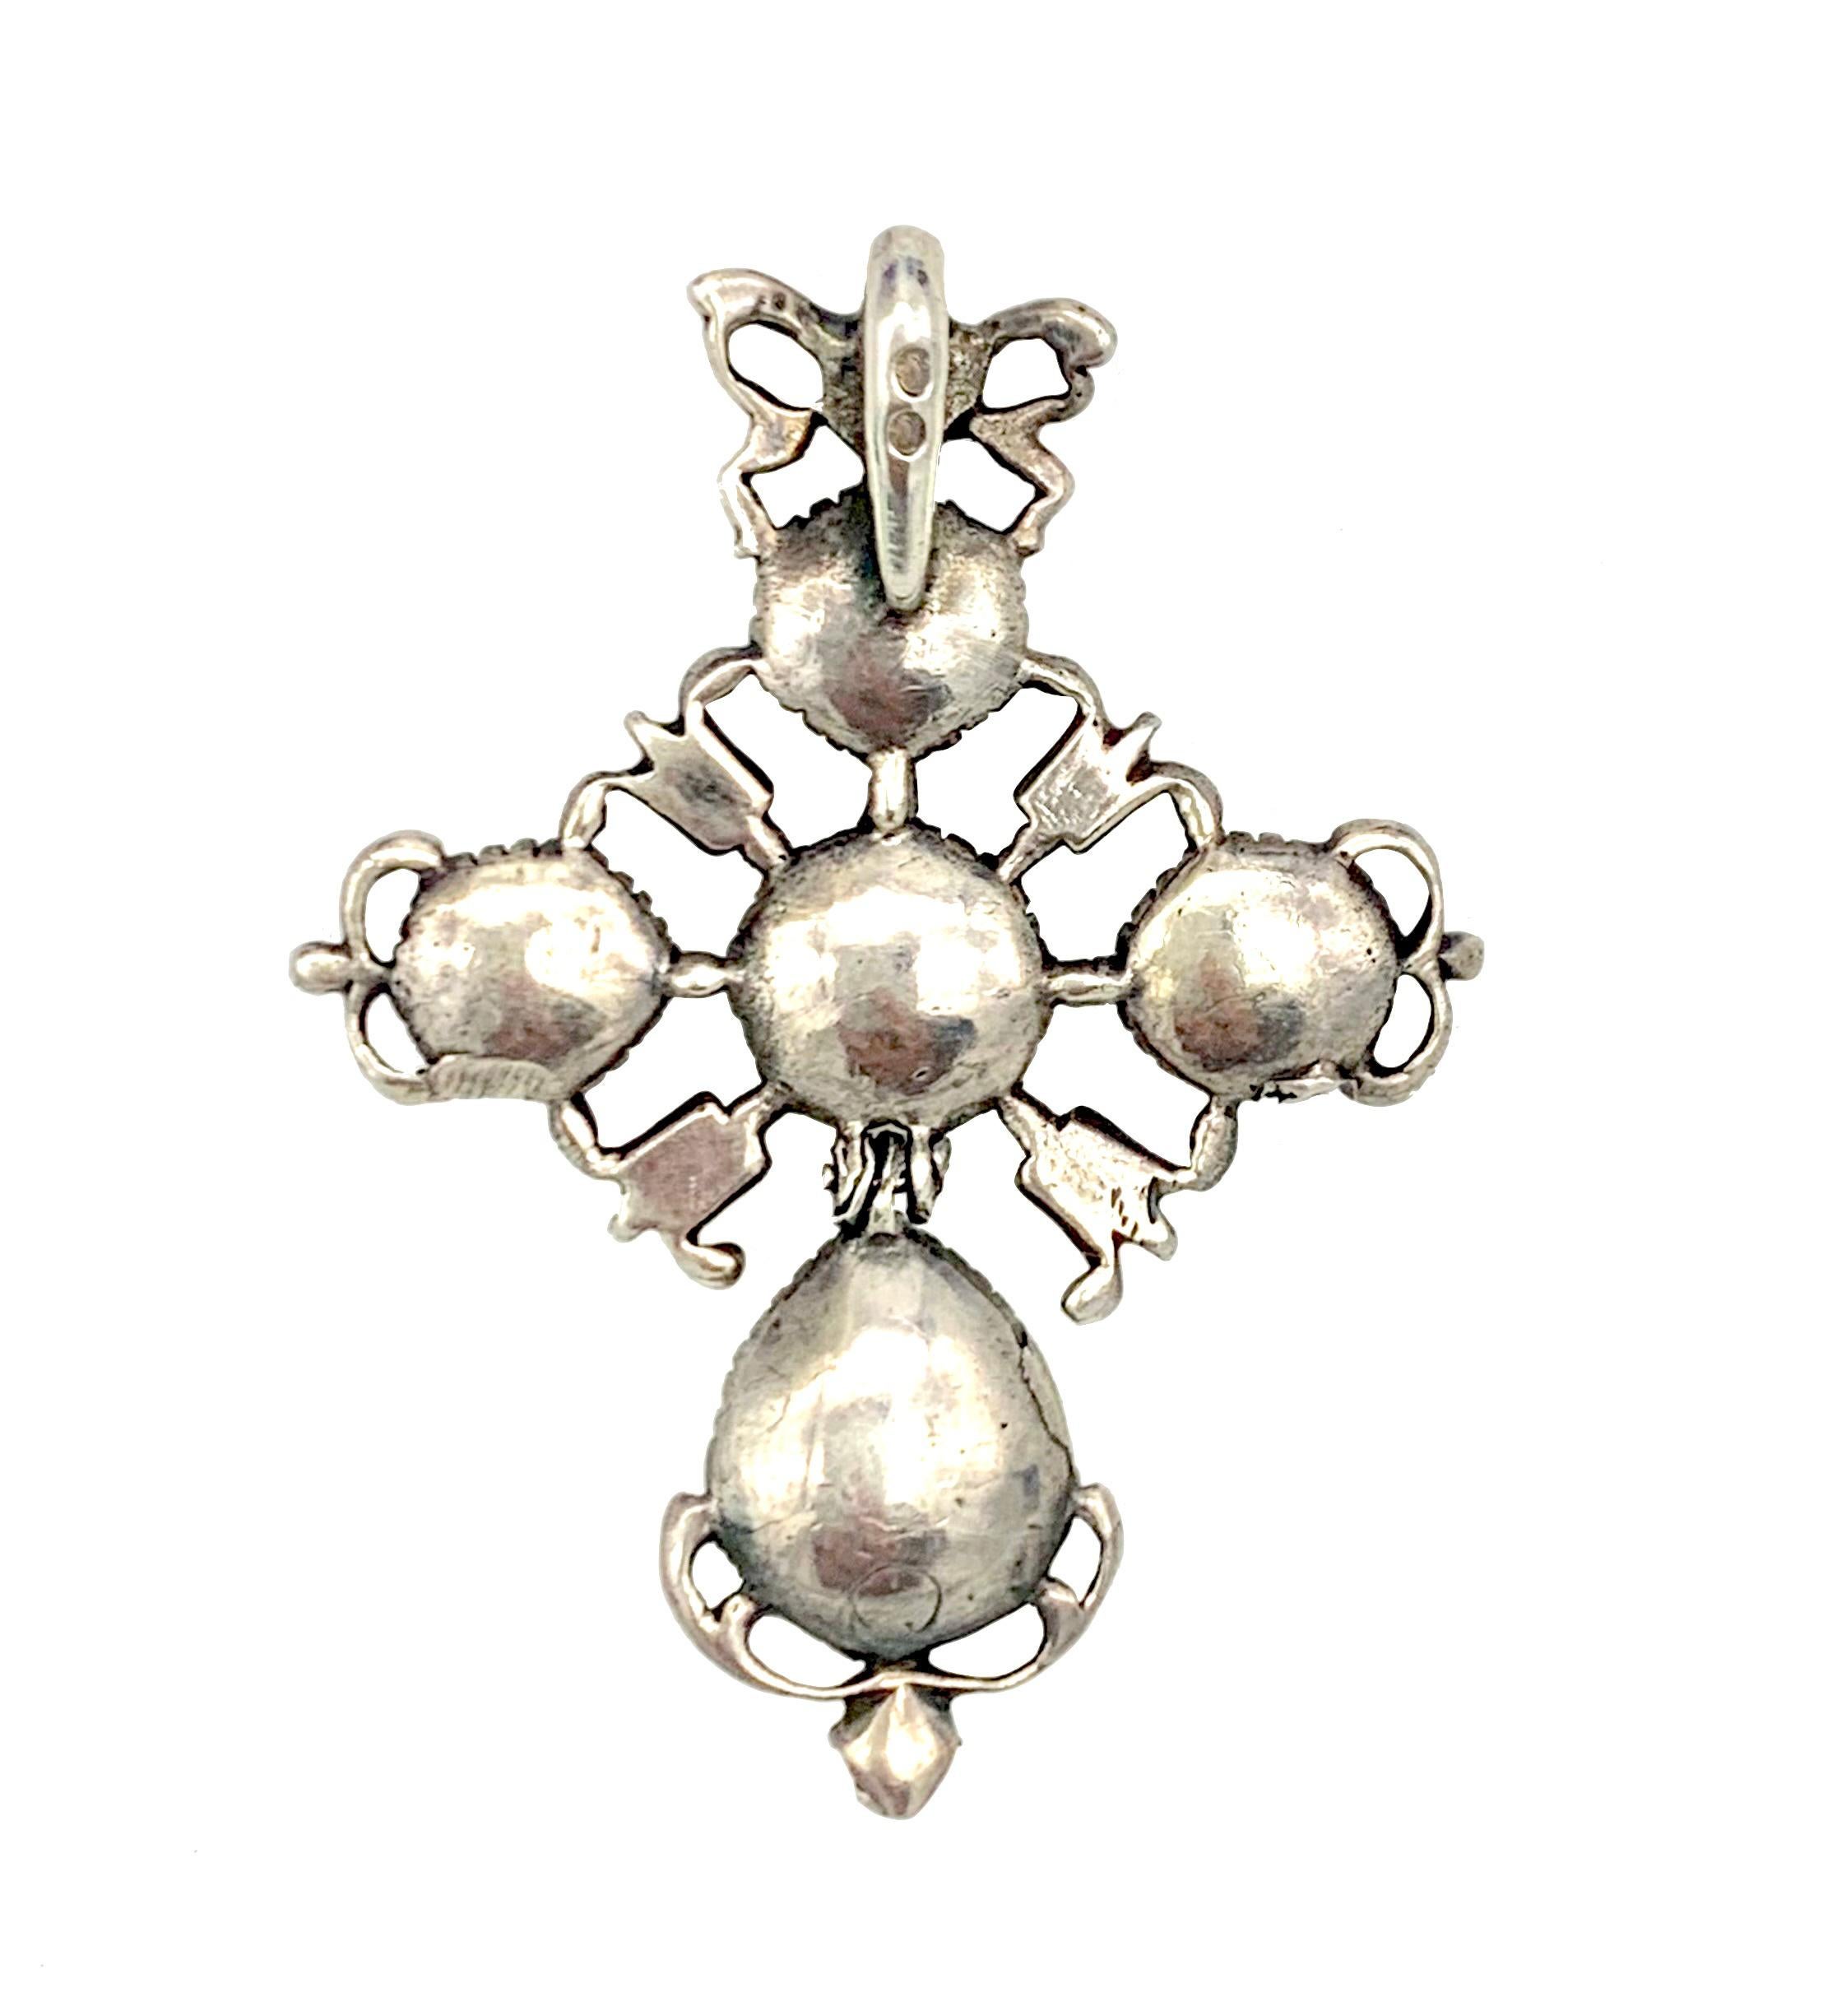 Cette belle et originale croix en argent a été fabriquée à la main dans la seconde moitié du XVIIIe siècle, dans les années 1770. Le bijou est serti de diamants roses d'ancienne mine en serti clos. Une croix est suspendue à une glissière en forme